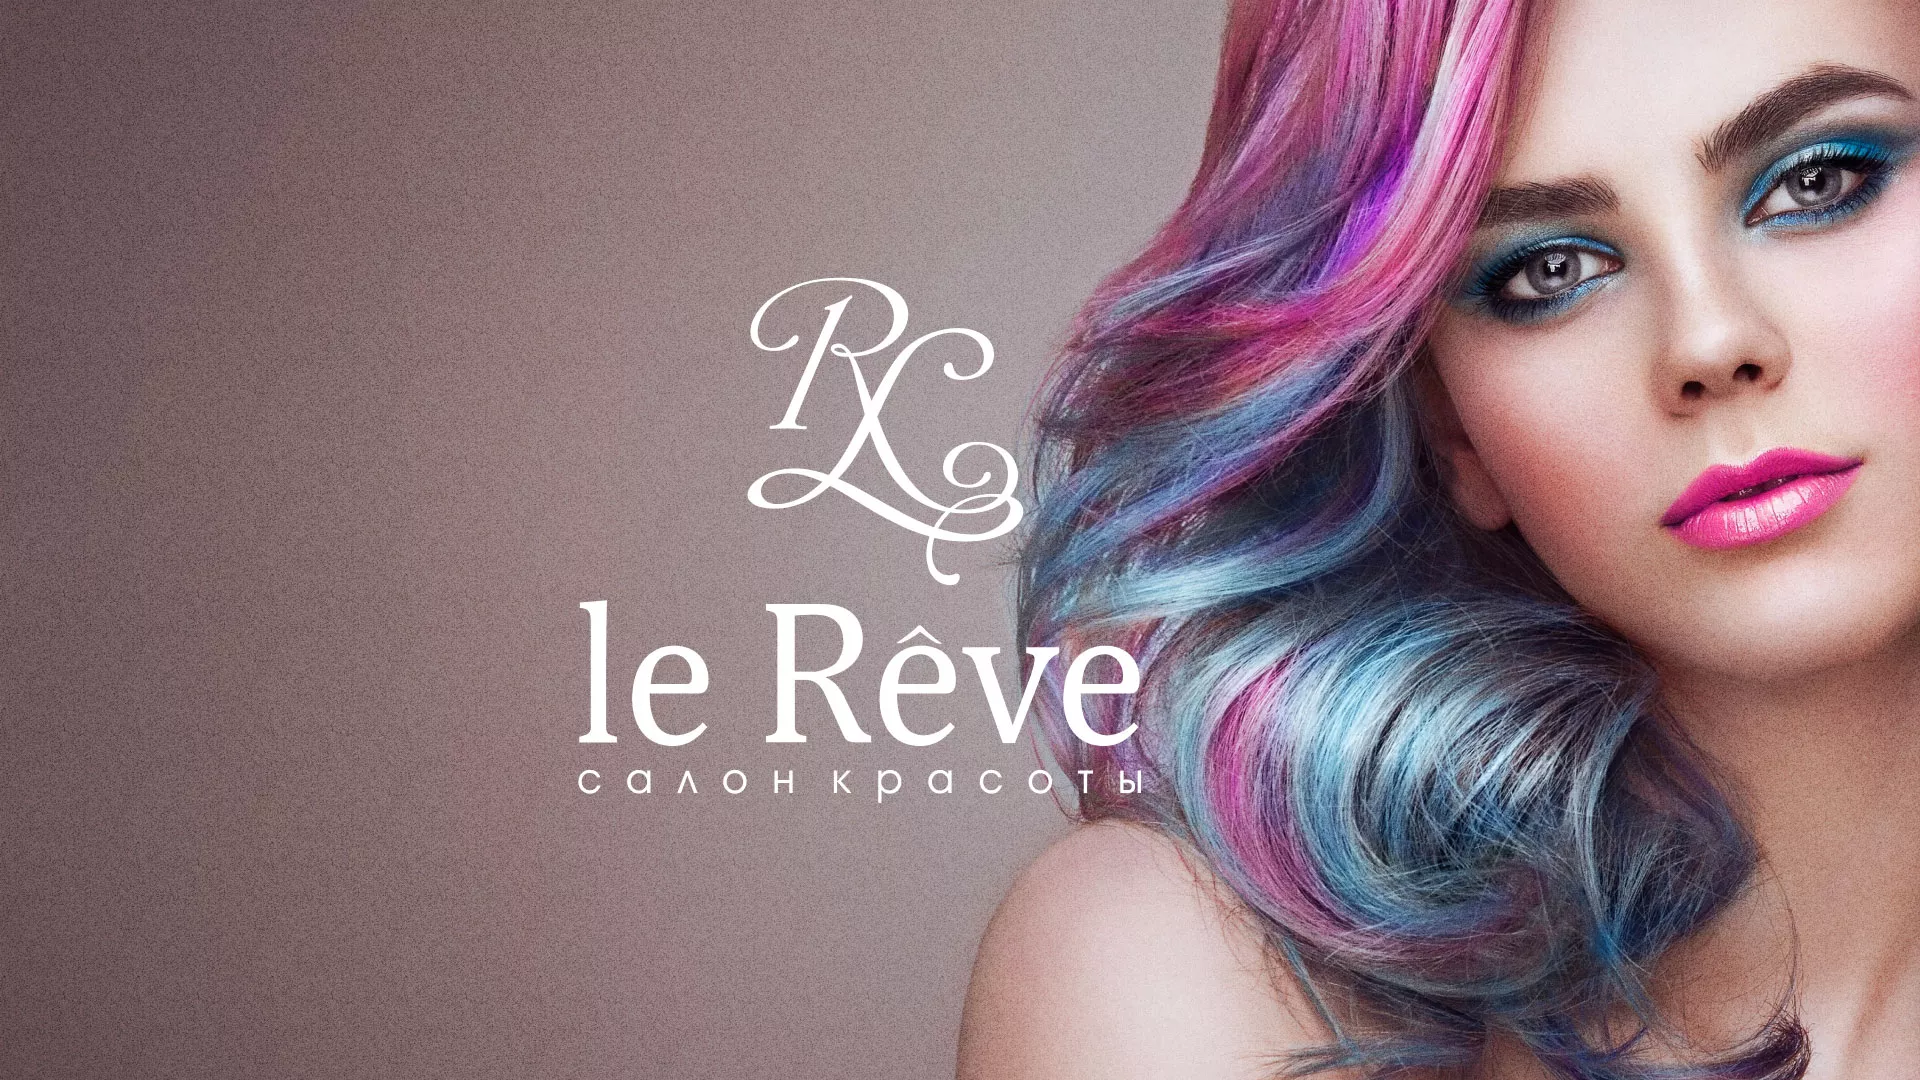 Создание сайта для салона красоты «Le Reve» в Щиграх